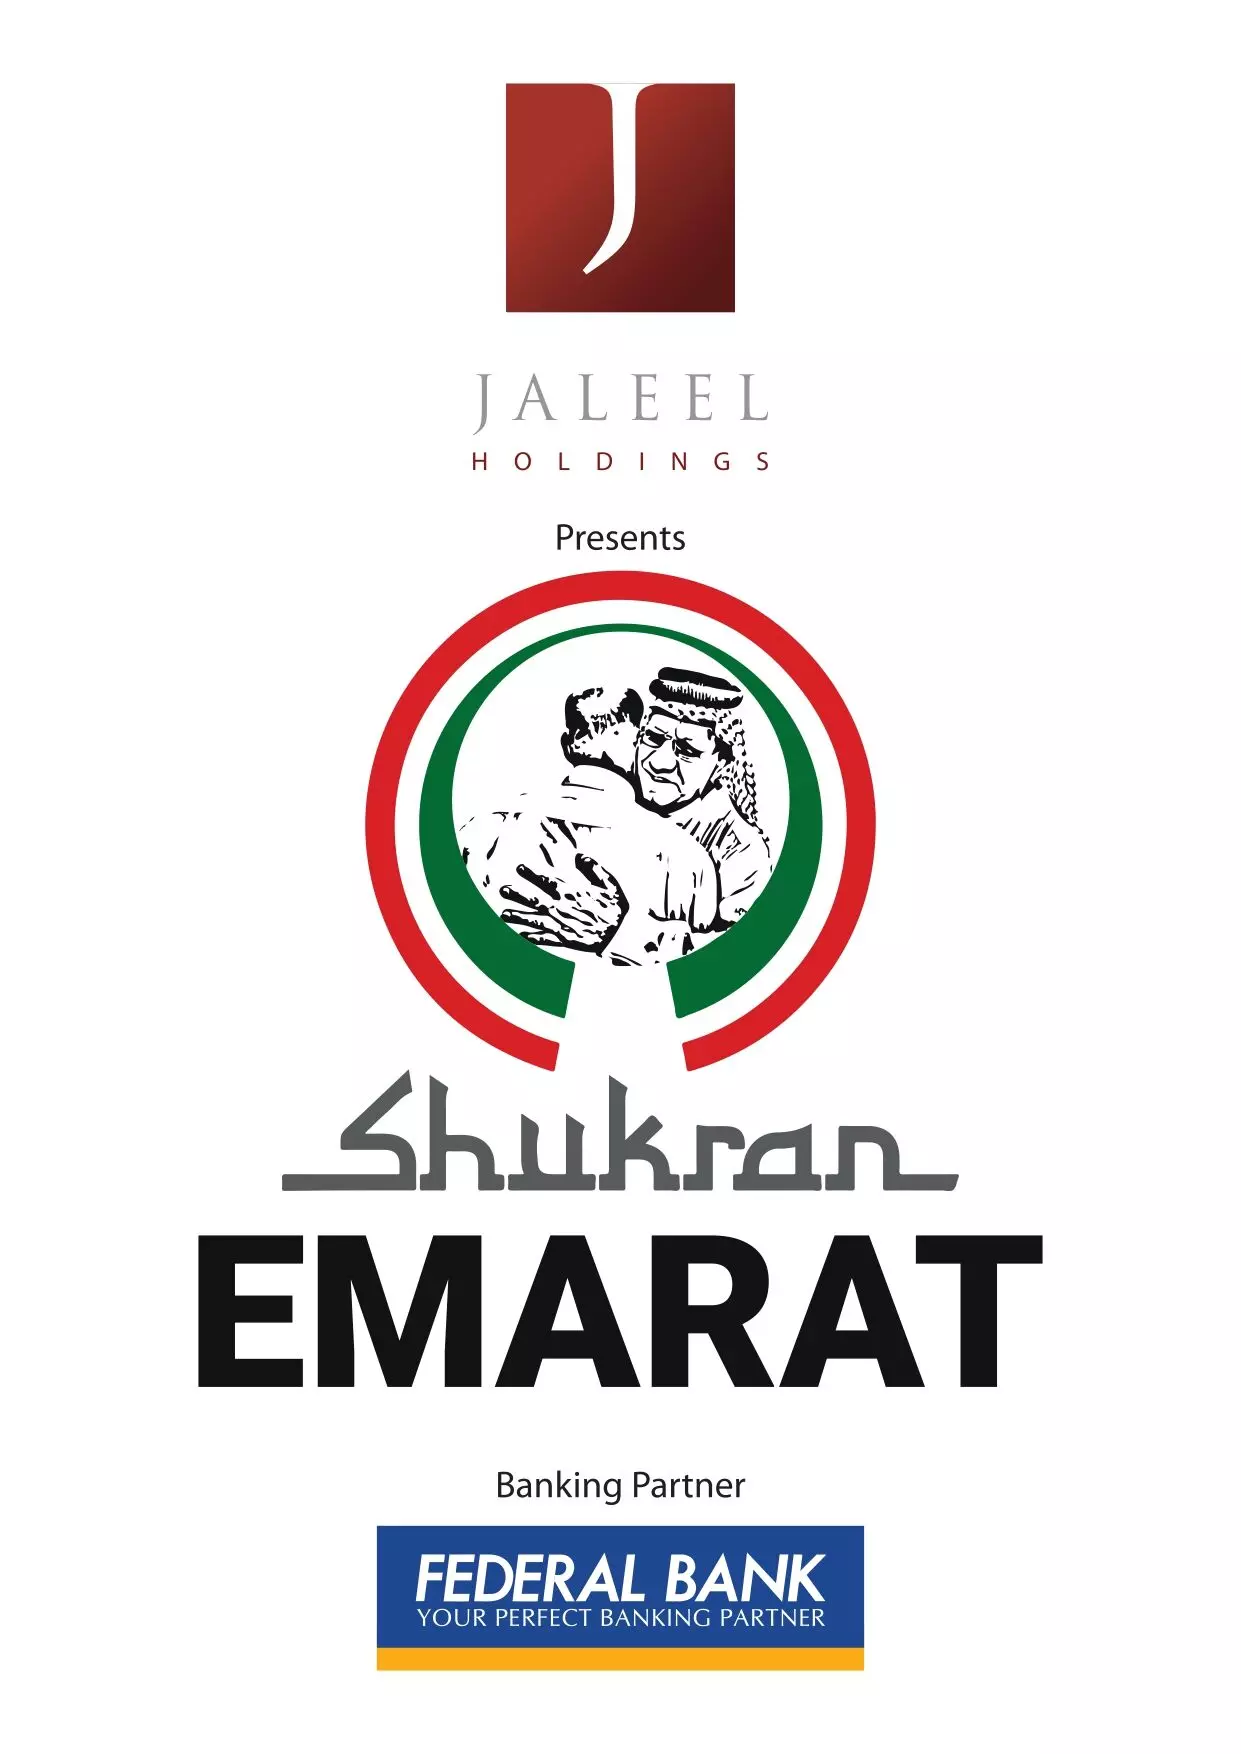 Shukran Emarat: Indias love and gratitude for UAE